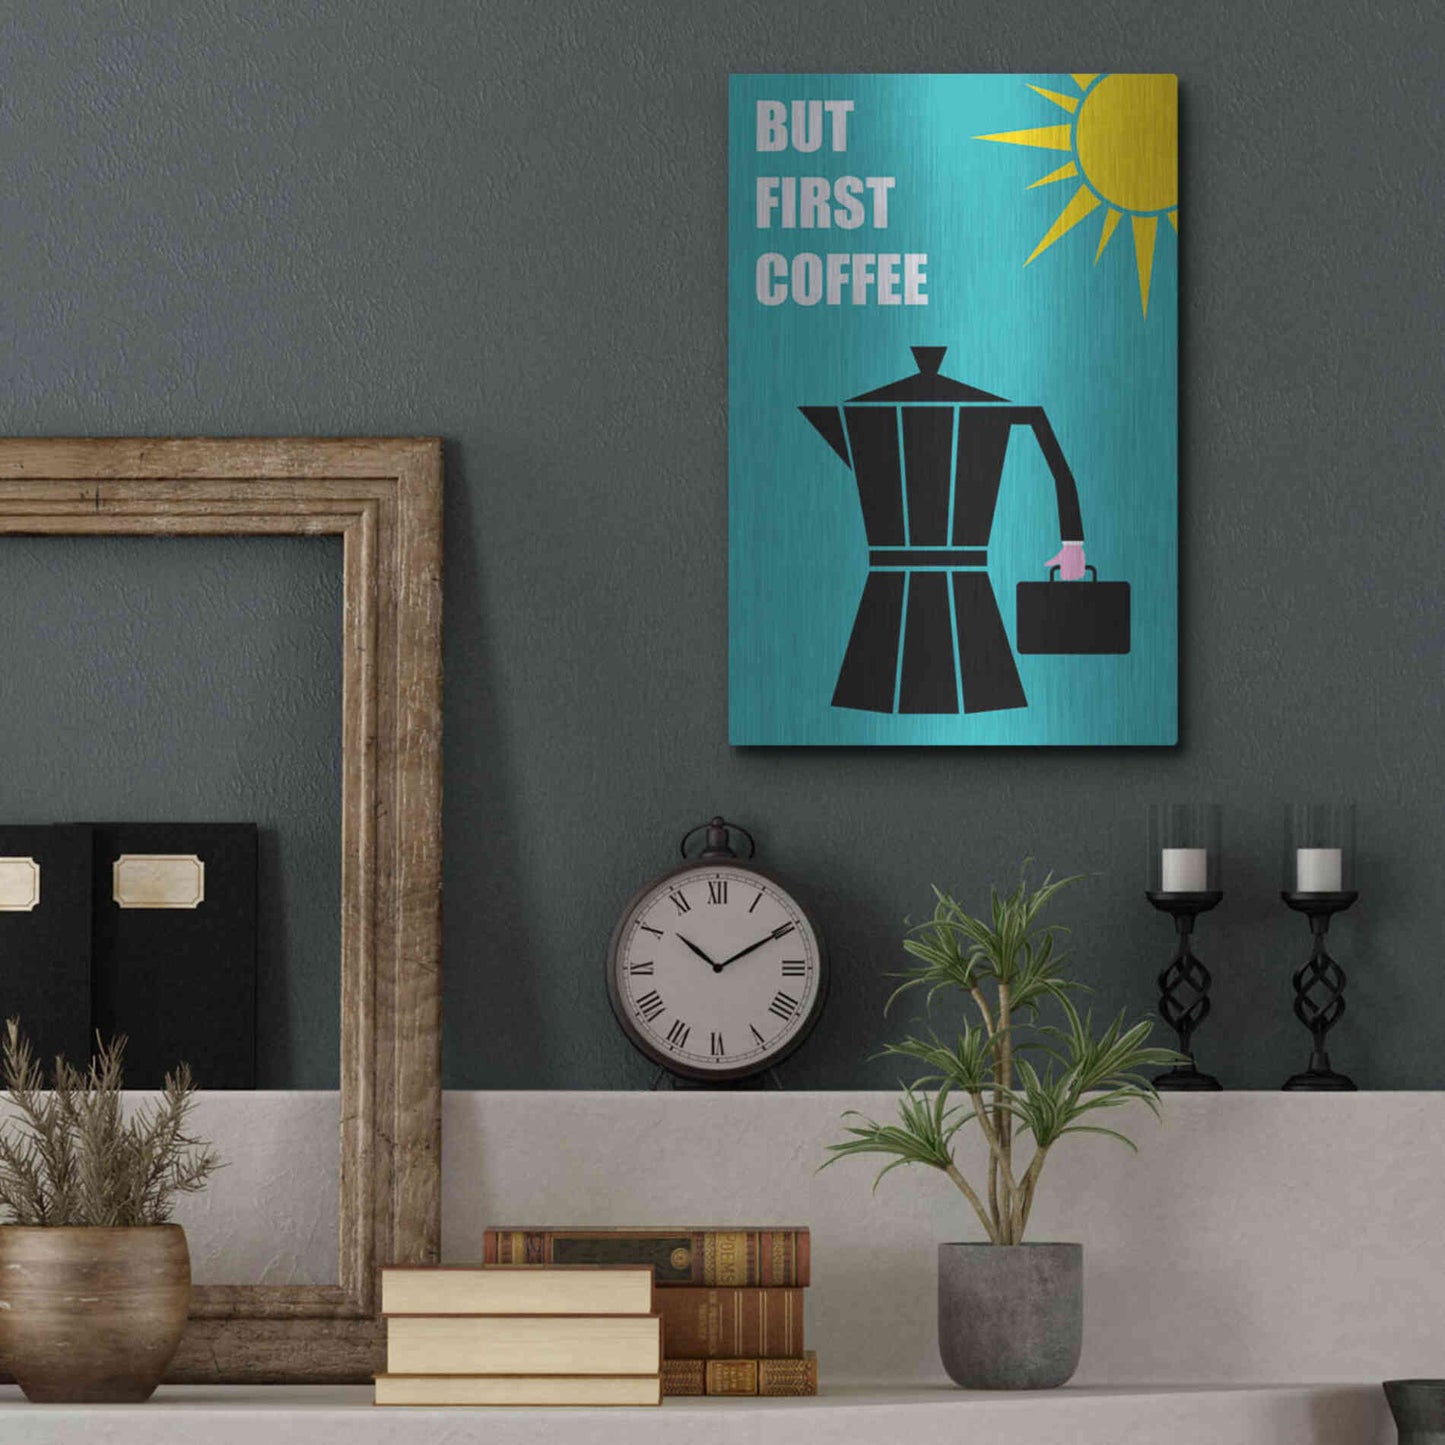 Luxe Metal Art 'But First Coffee' by Cesare Bellassai, Metal Wall Art,12x16